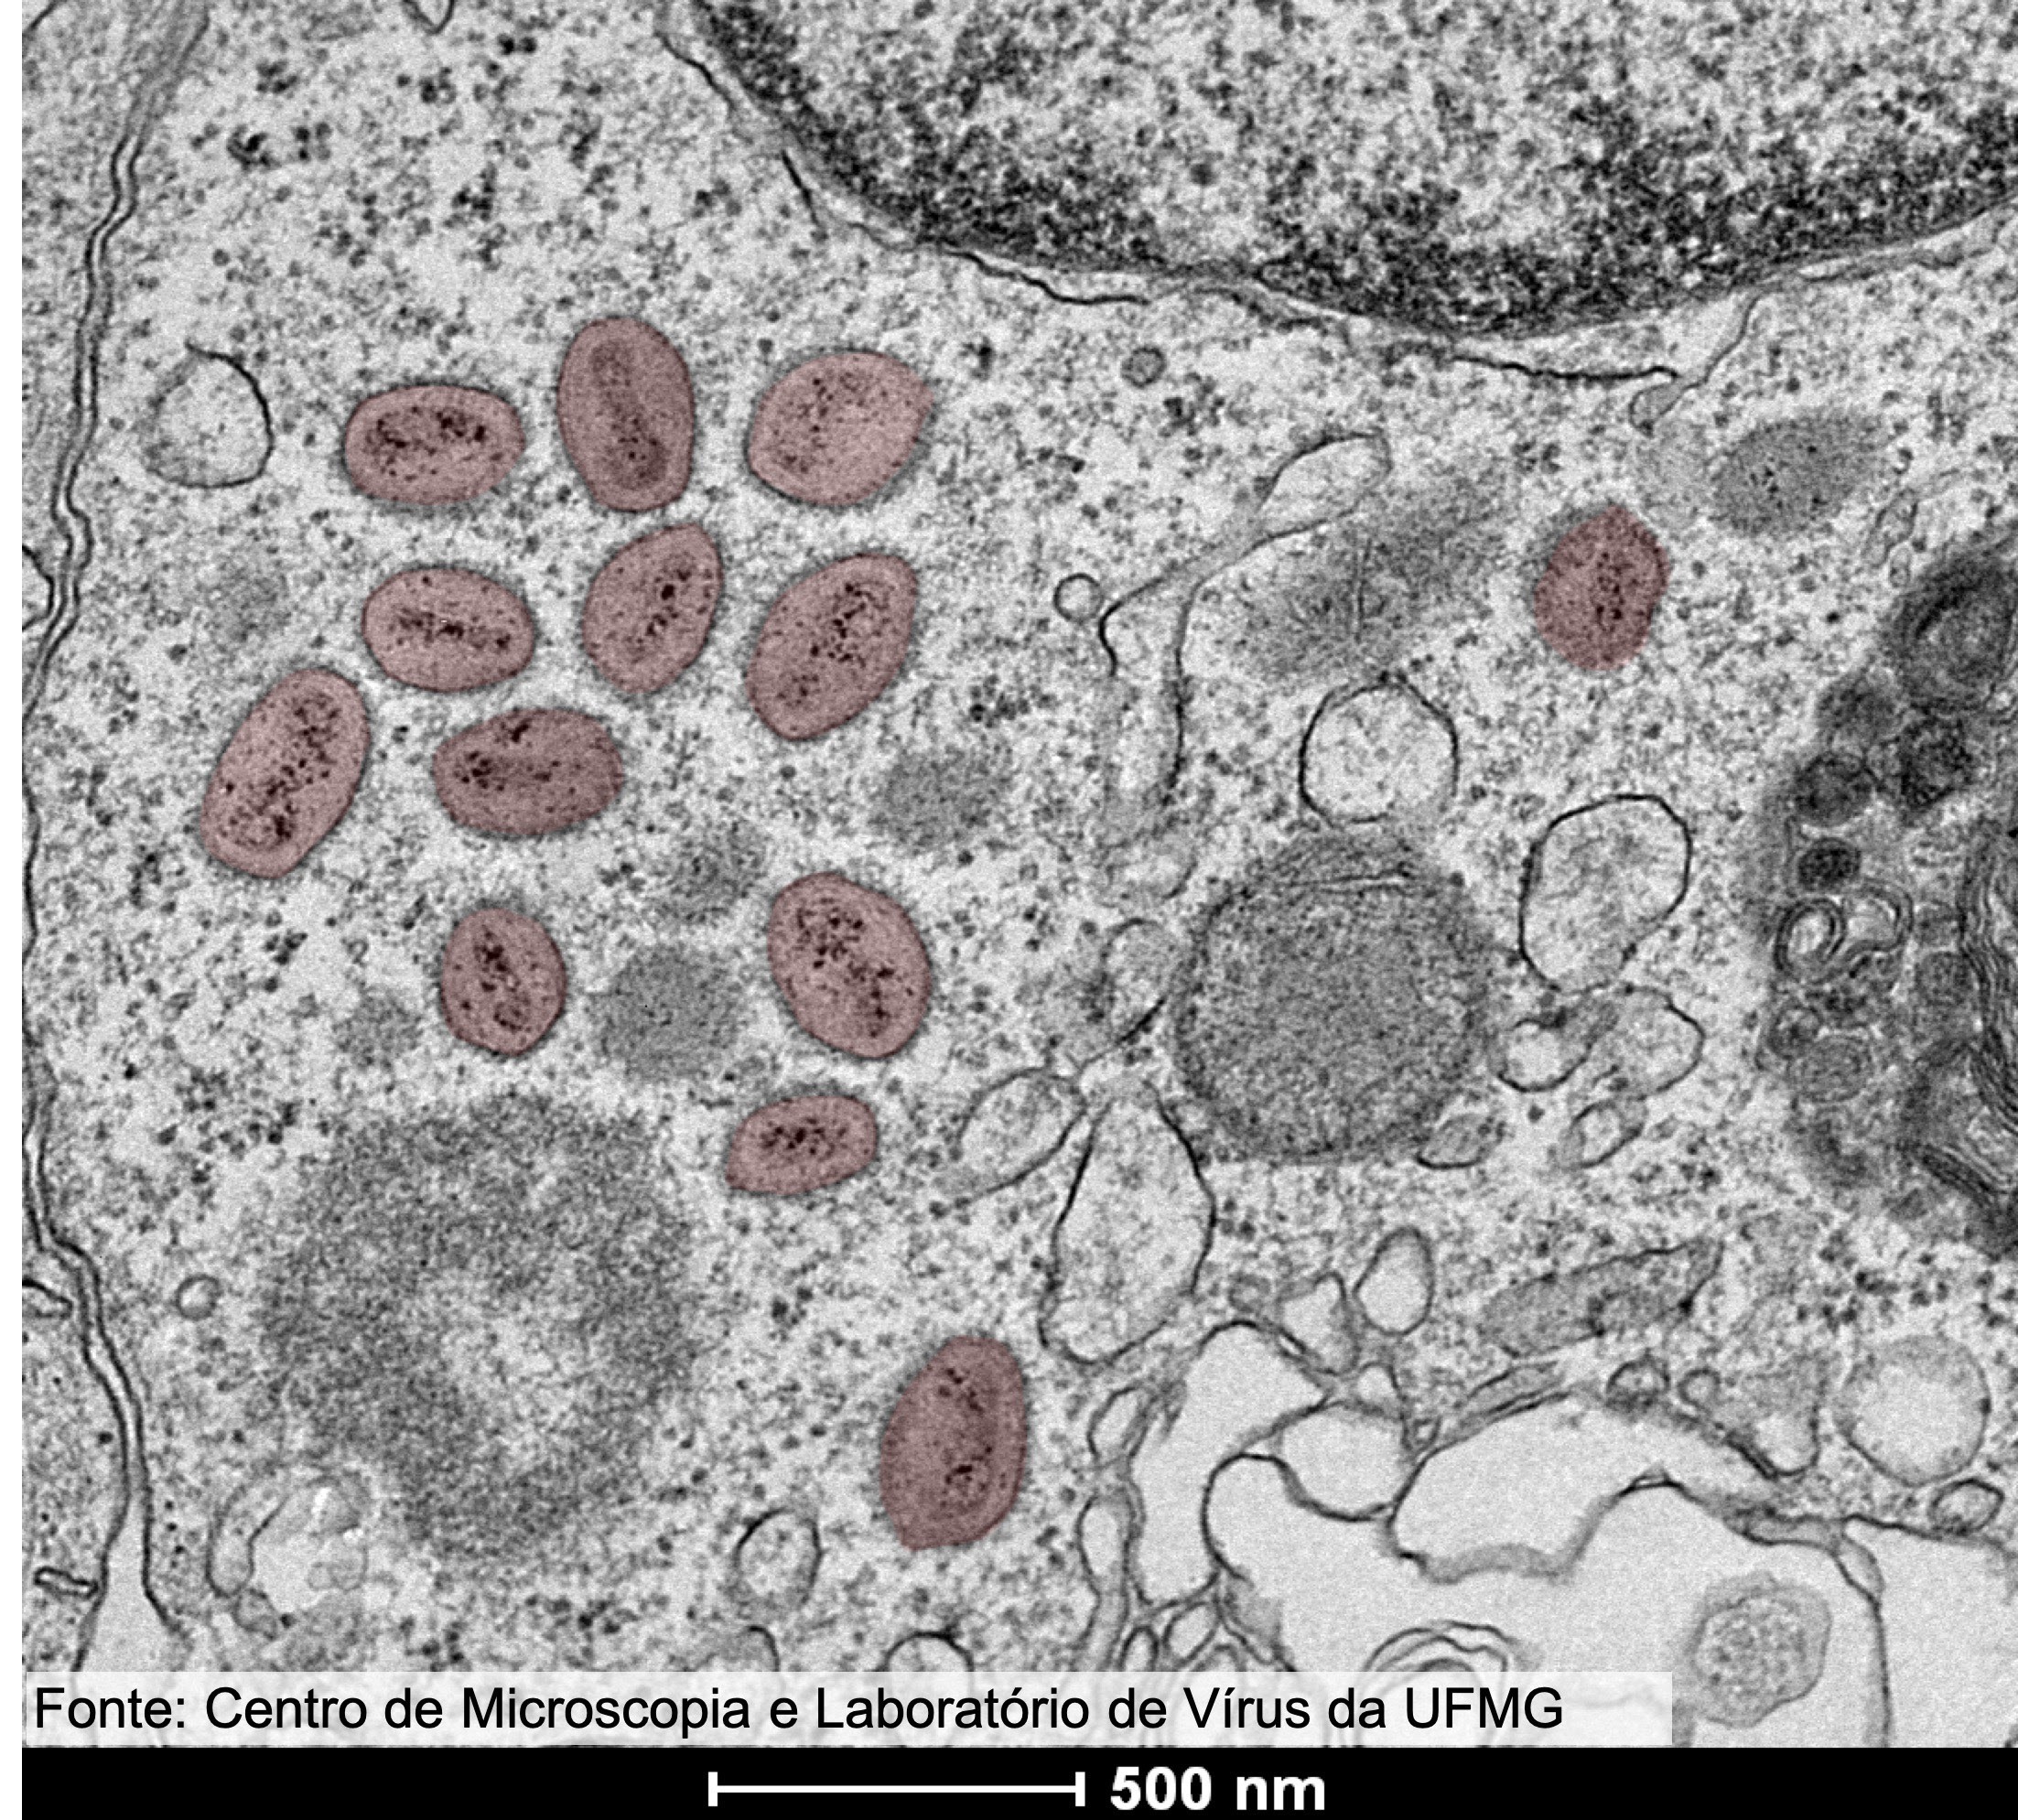 Imagem de amostra do vírus monkeypox obtida por microscopia eletrônica